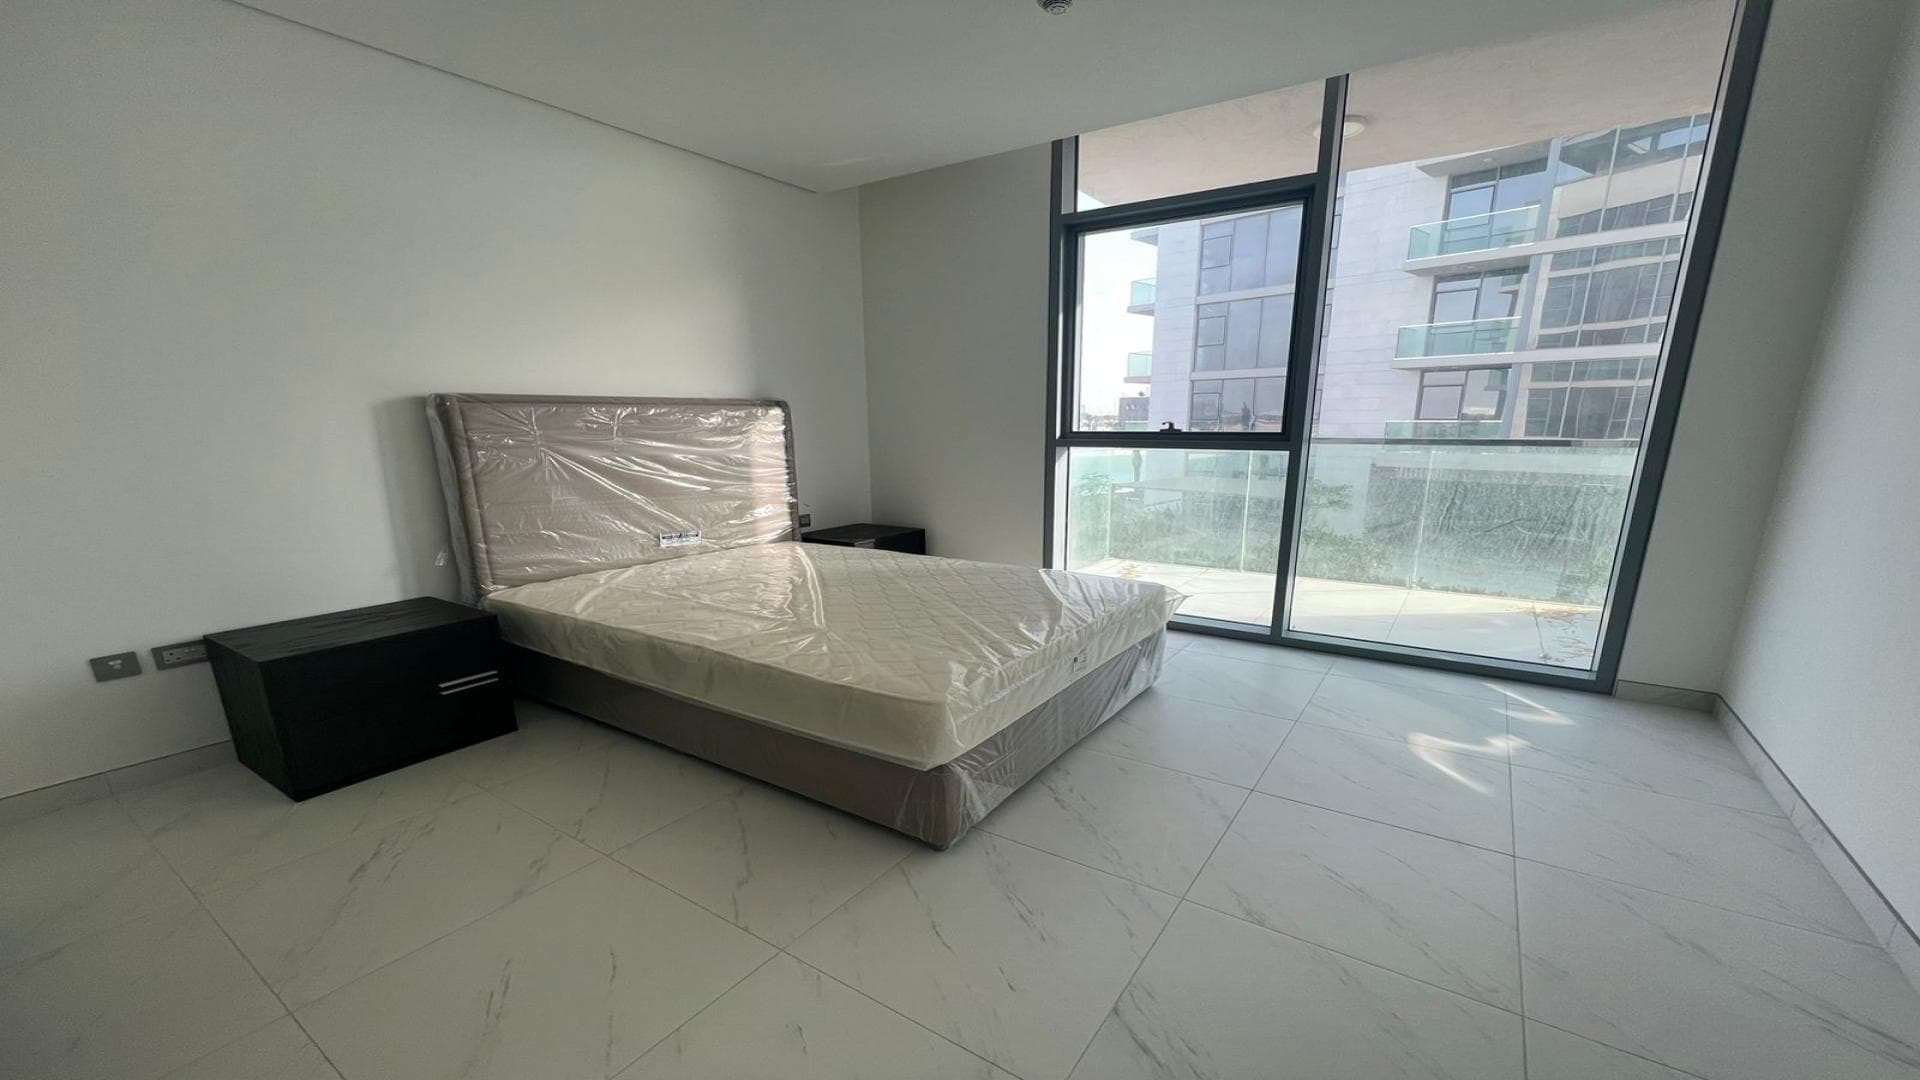 1 Bedroom Apartment For Rent  Lp37932 52a88e1e13d7f40.jpg